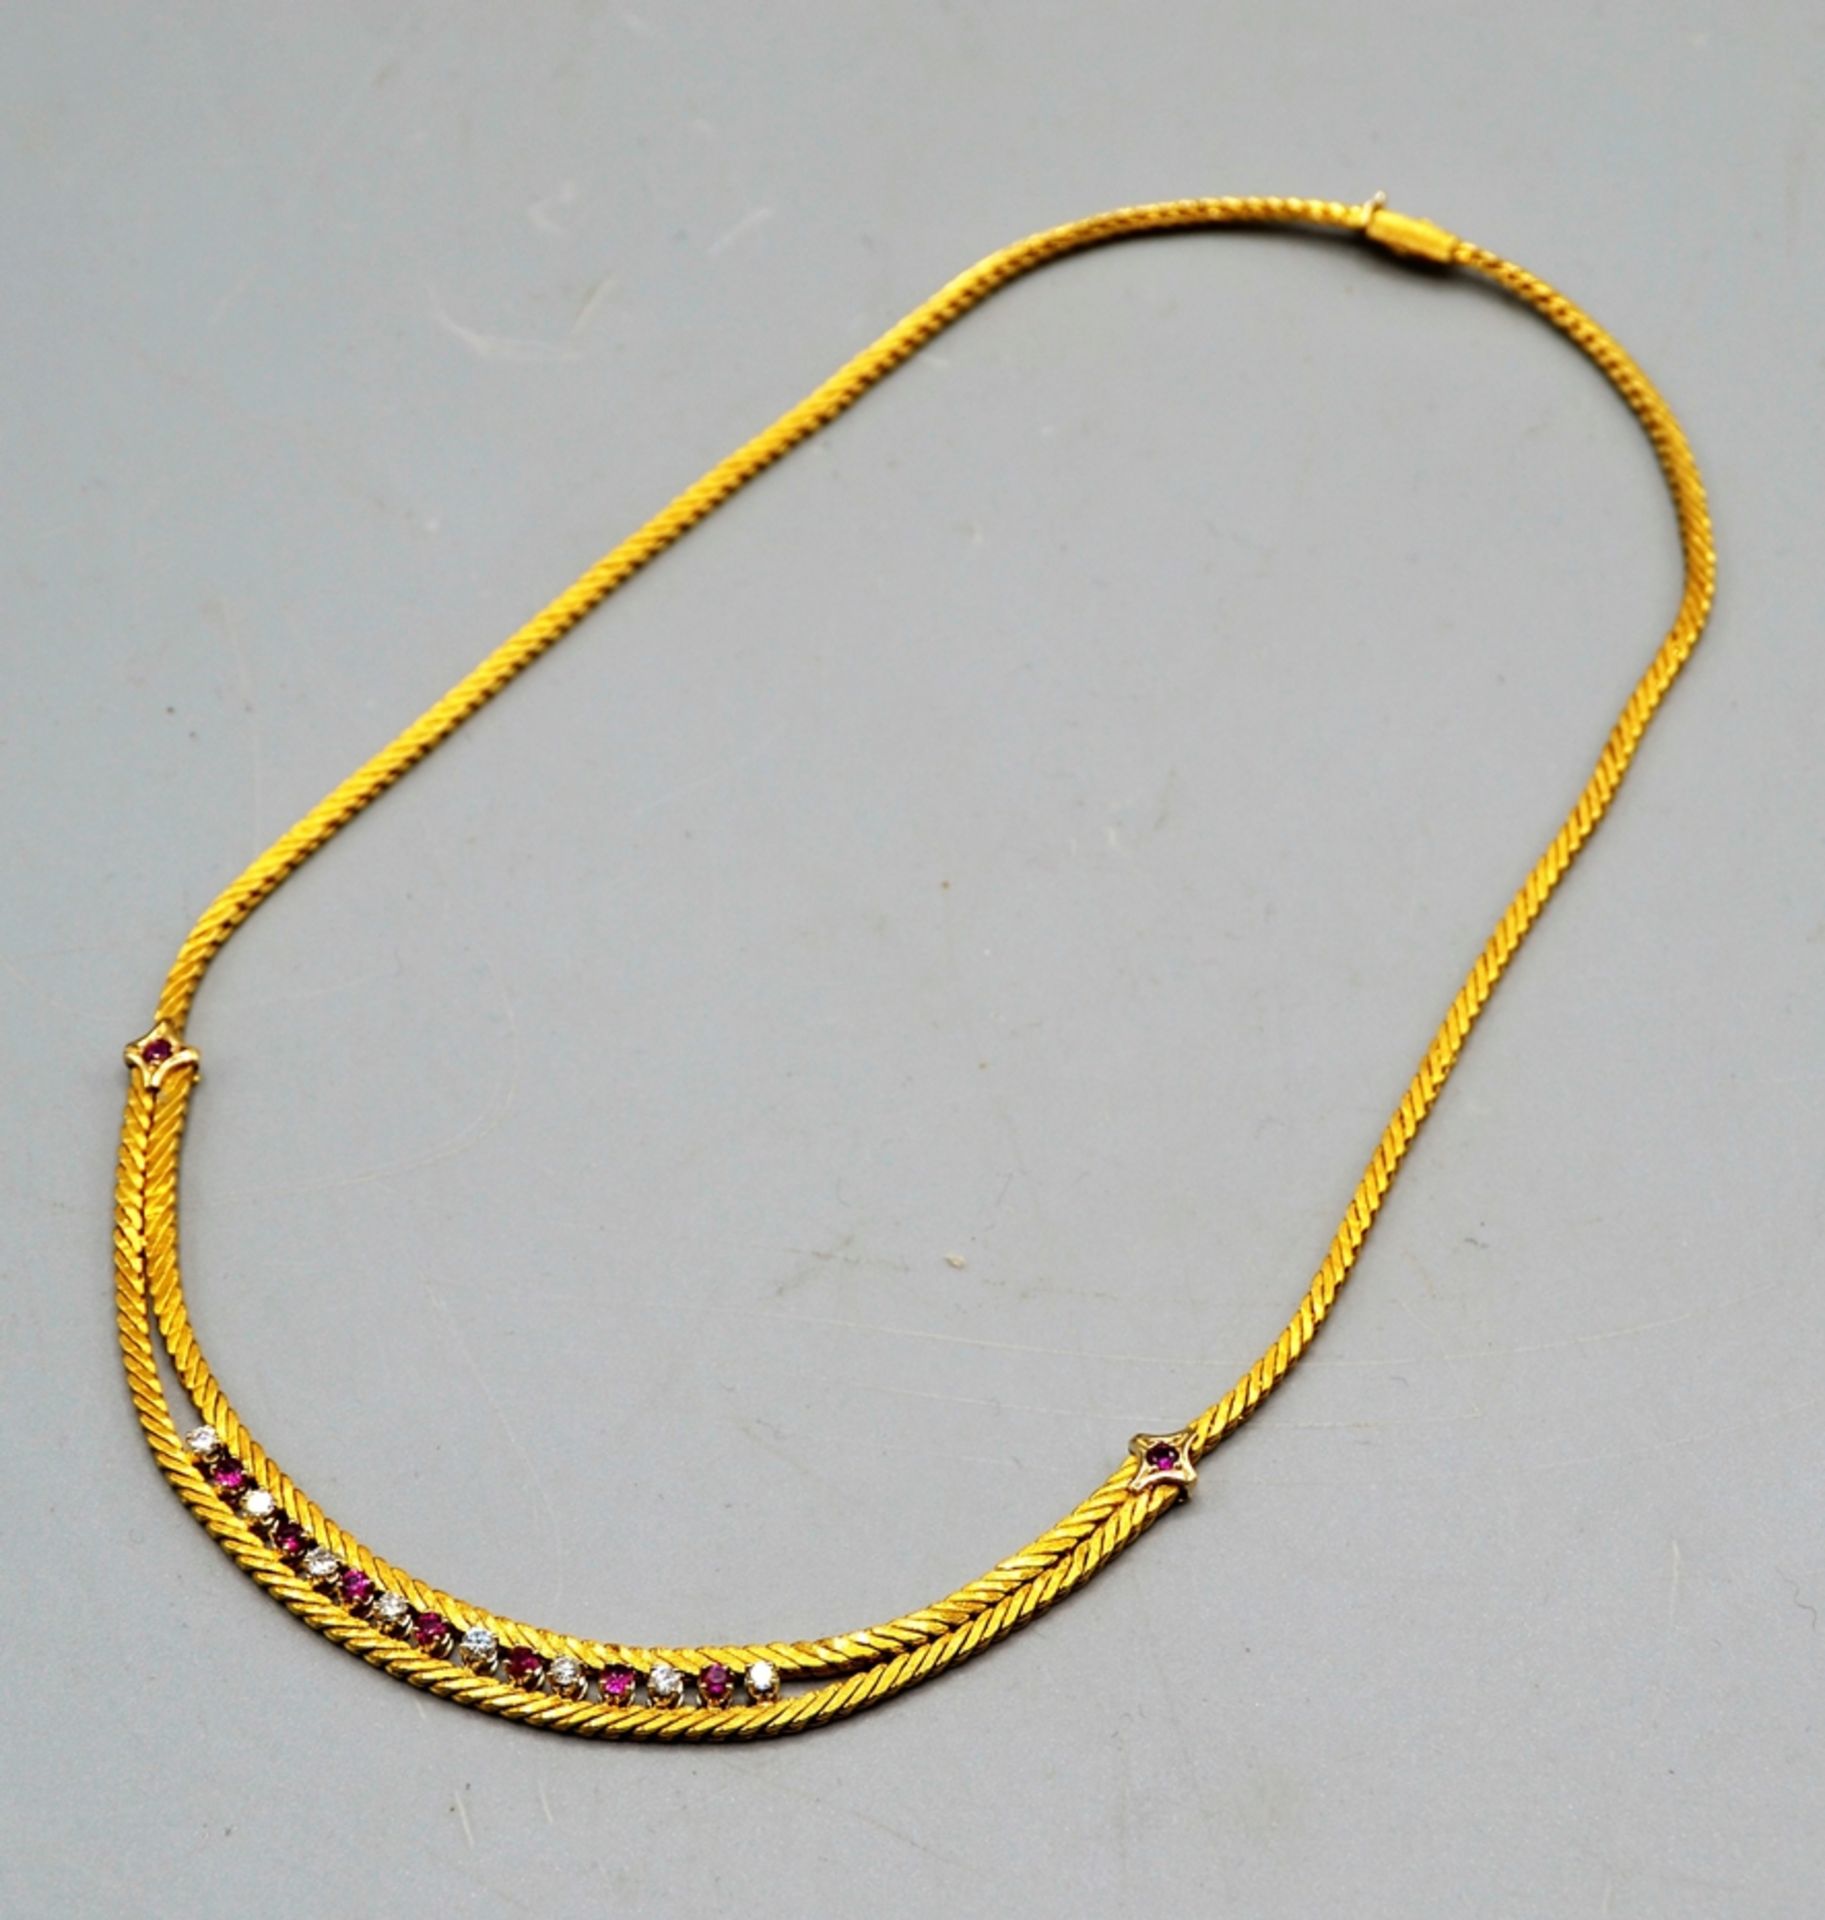 Rubin Brillanten Collier 750 Gold, 9 Rubine, 8 Brillanten, ca. 47 cm, 34,4 g - Bild 3 aus 3